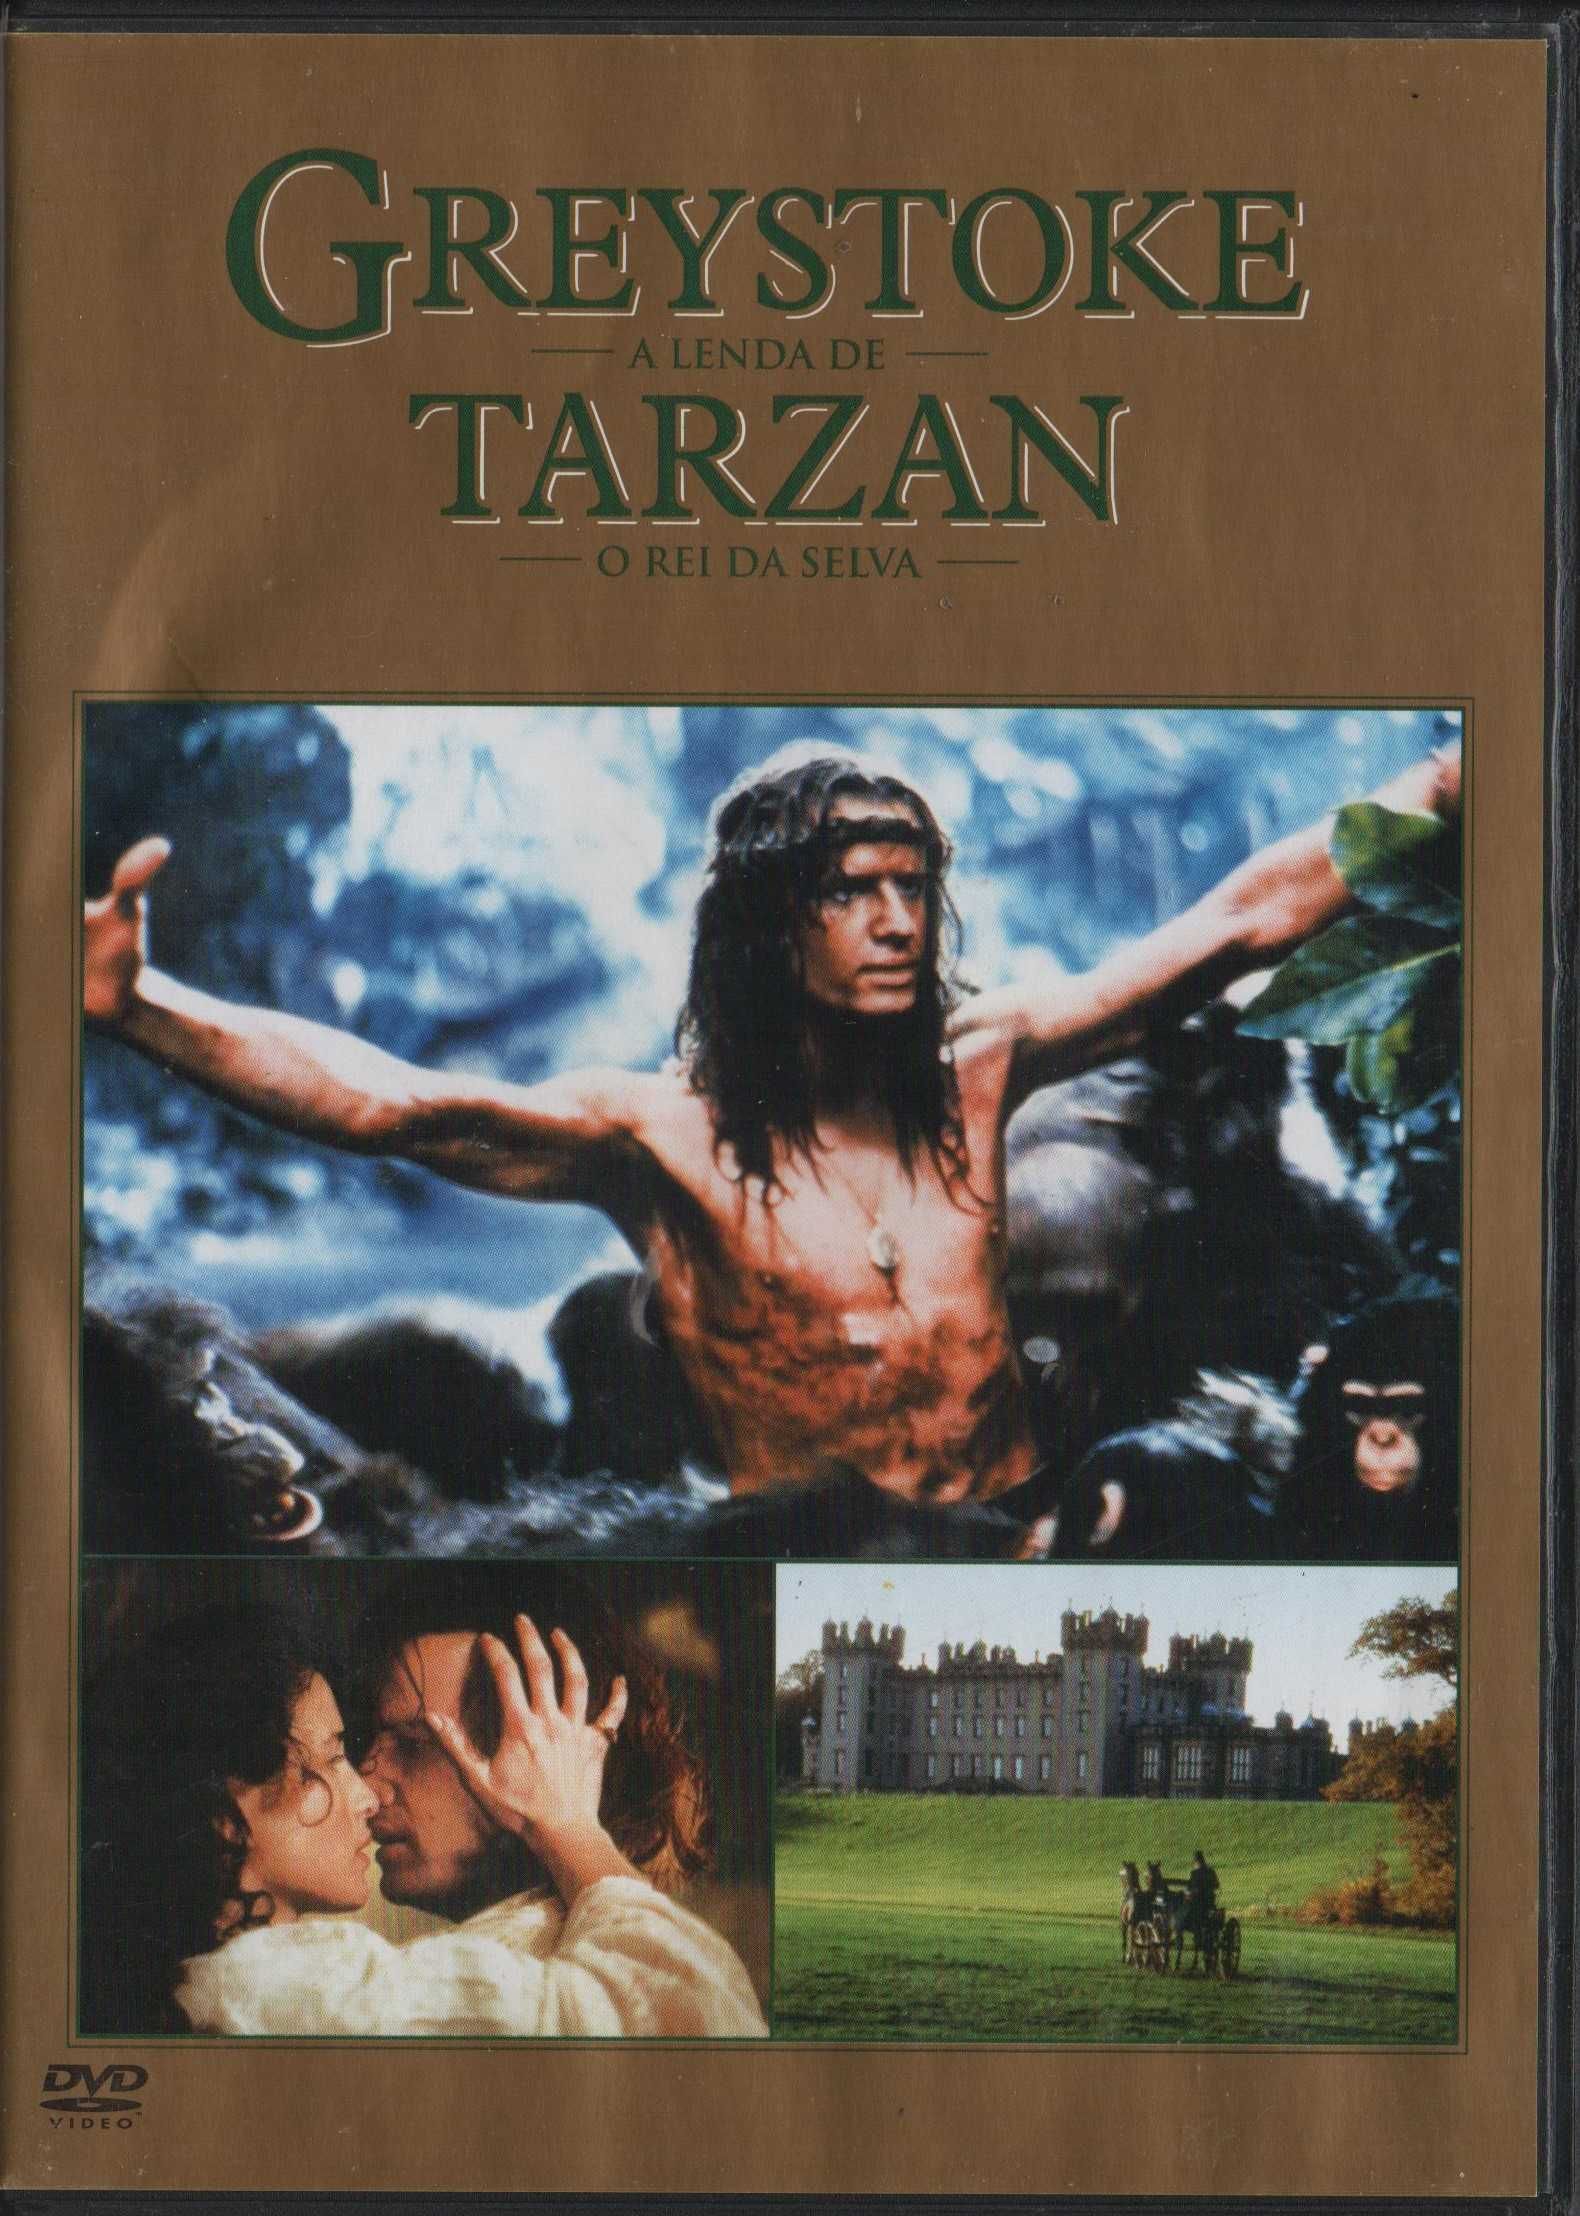 Dvd Greystoke - A Lenda de Tarzan, O Rei da Selva - extras